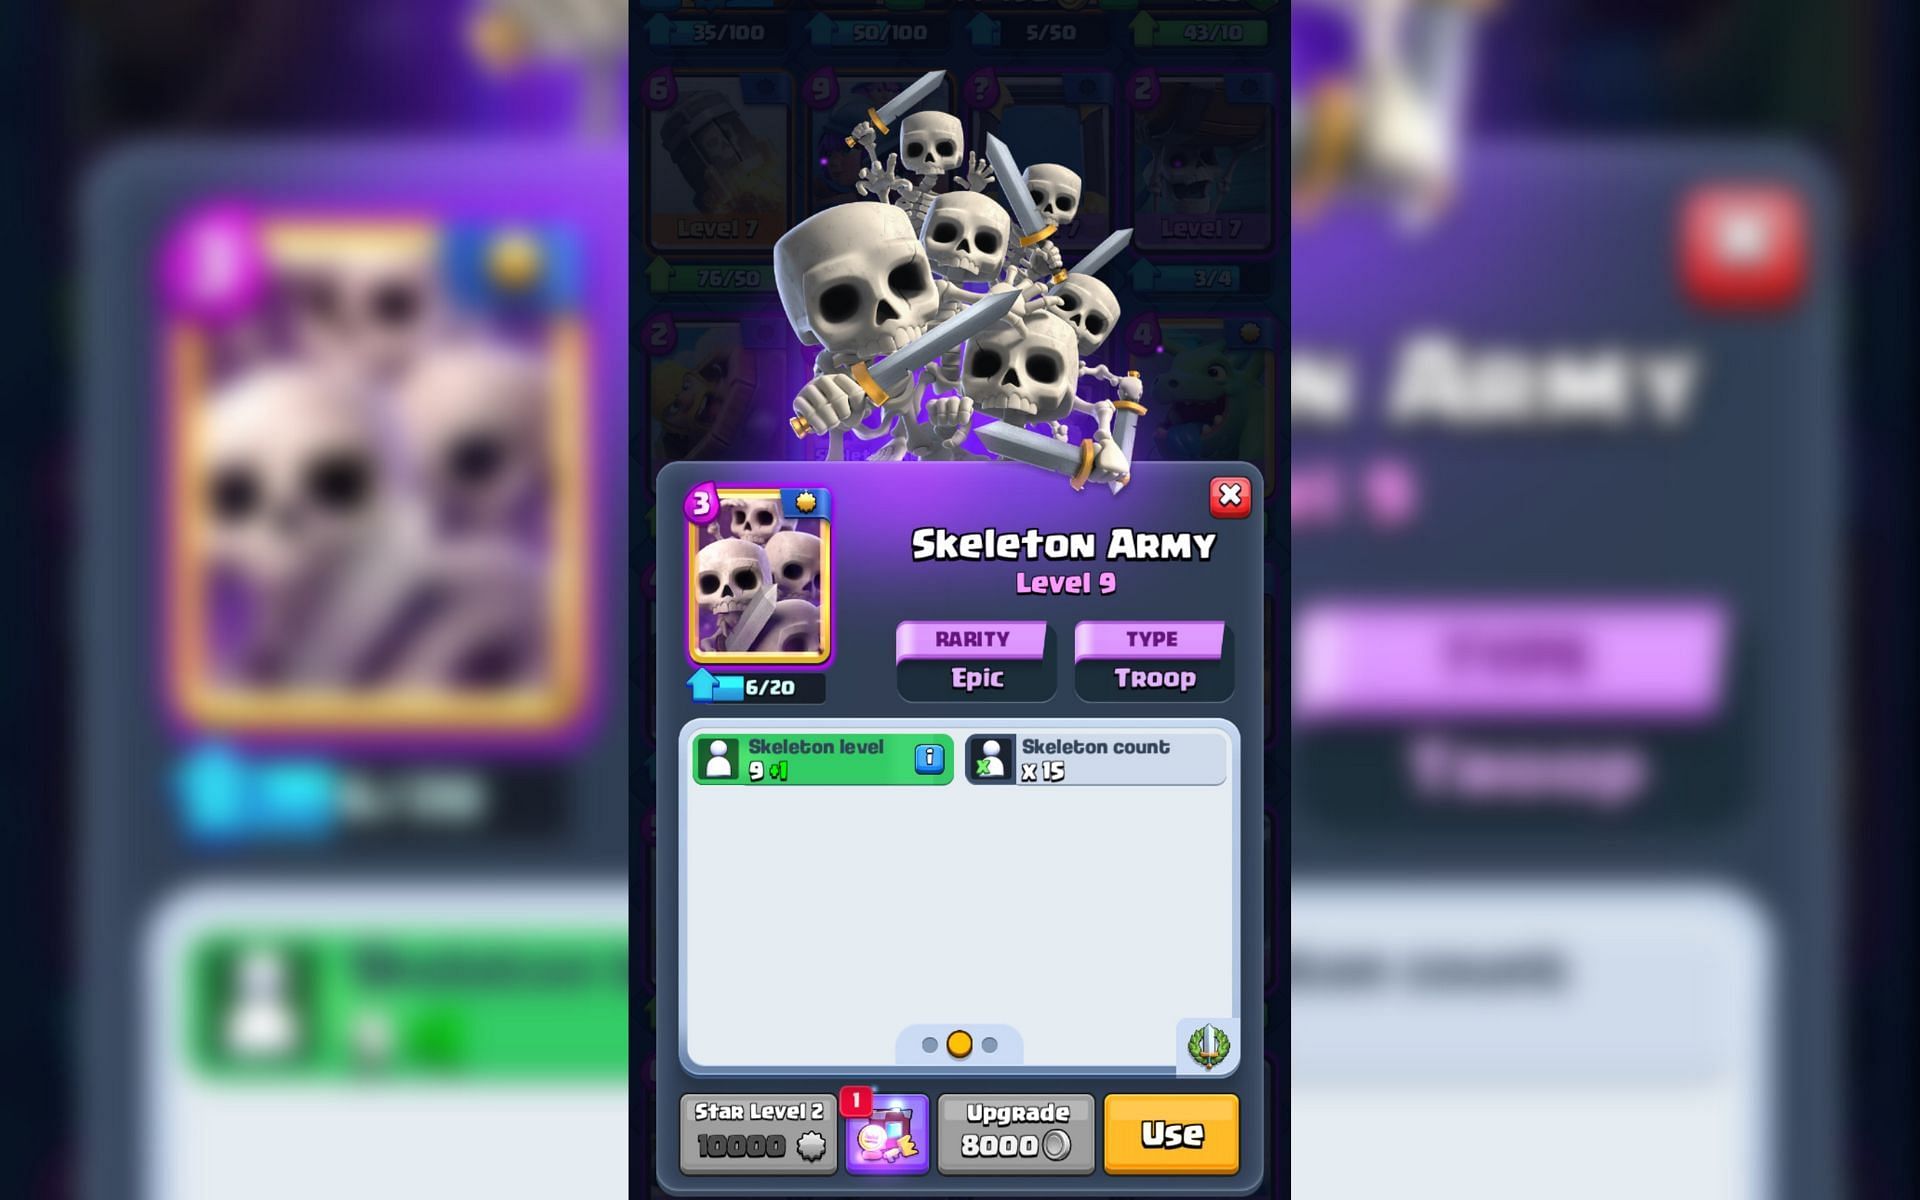 The Skeleton Army card in Clash Royale releases 15 Skeletons (Image via Sportskeeda)